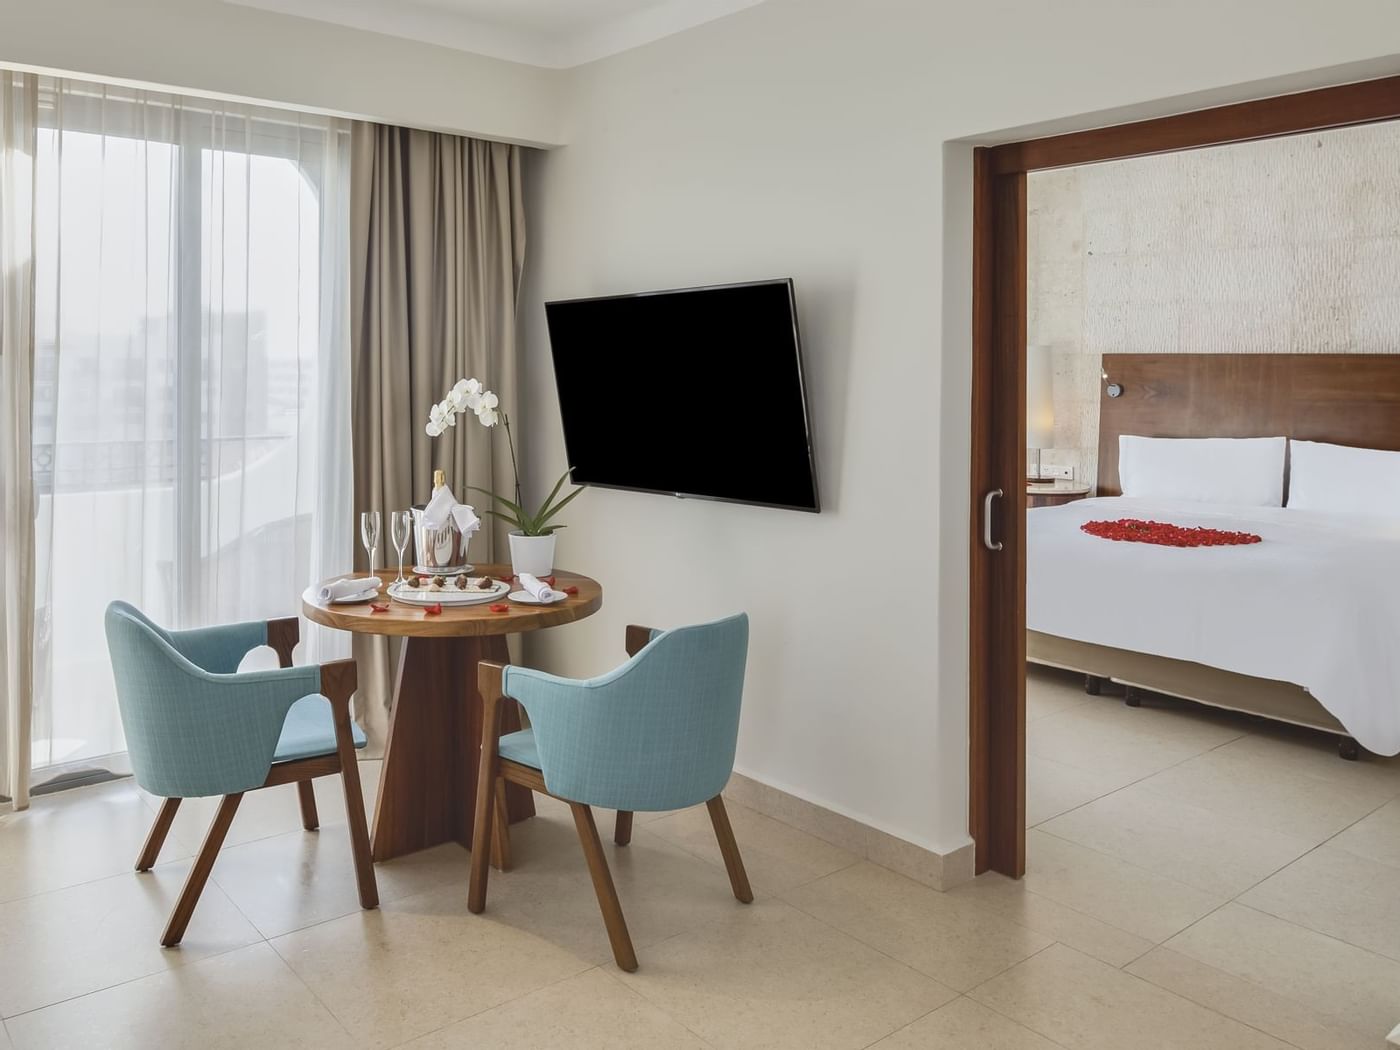 Living space in Honeymoon Suite at Fiesta Americana Hotels